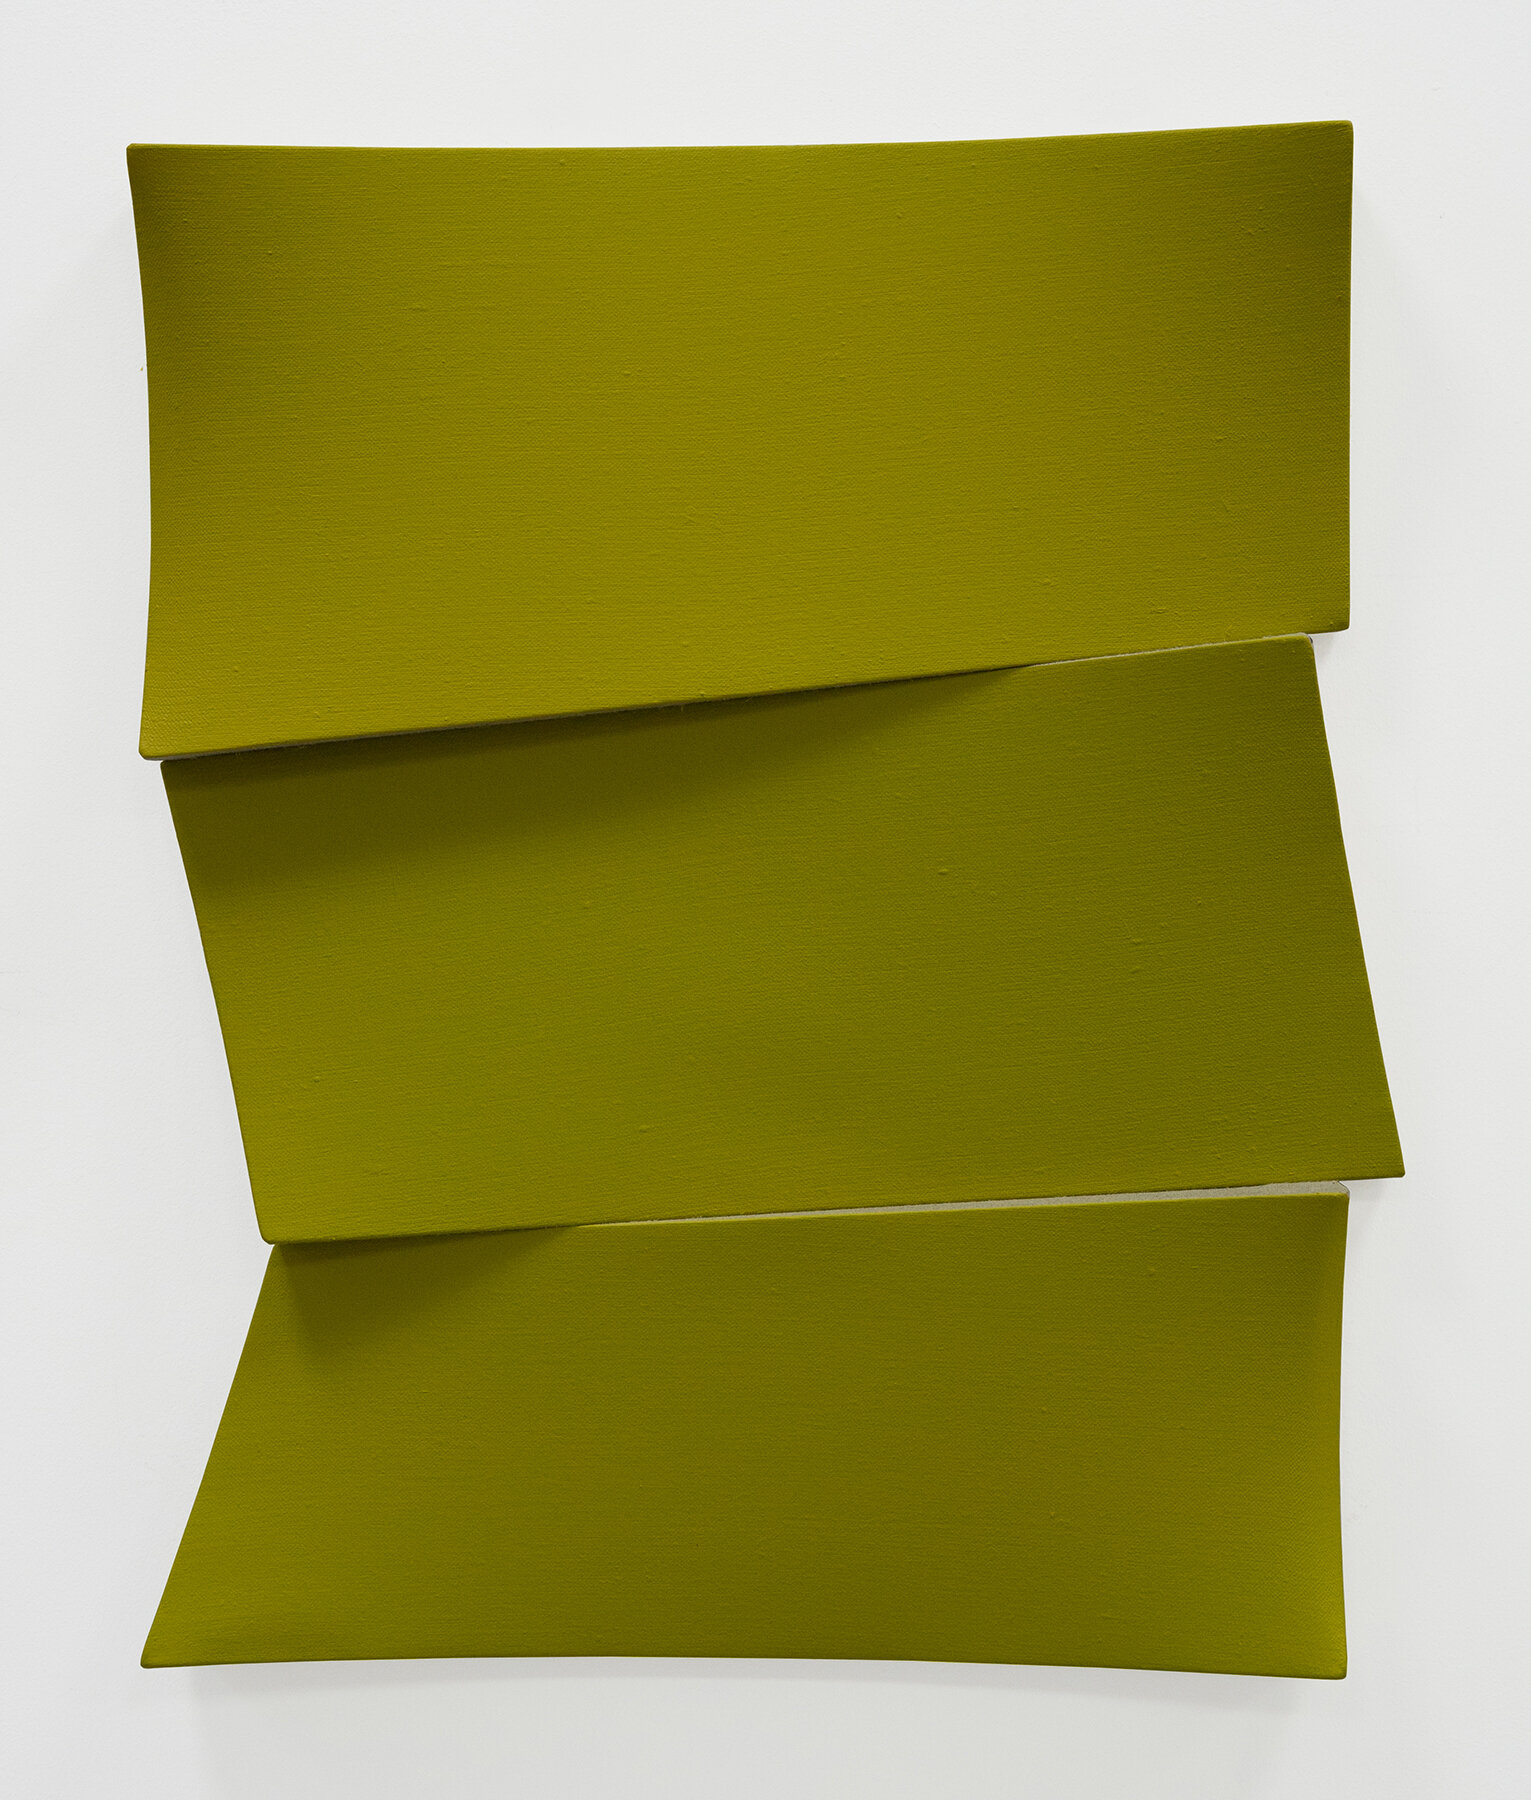 JAN MAARTEN VOSKUIL | Broken yellow stack, 25.5 x 21 x 2 inches / 65 x 53 x 5 cm, acrylics on linen, 2019